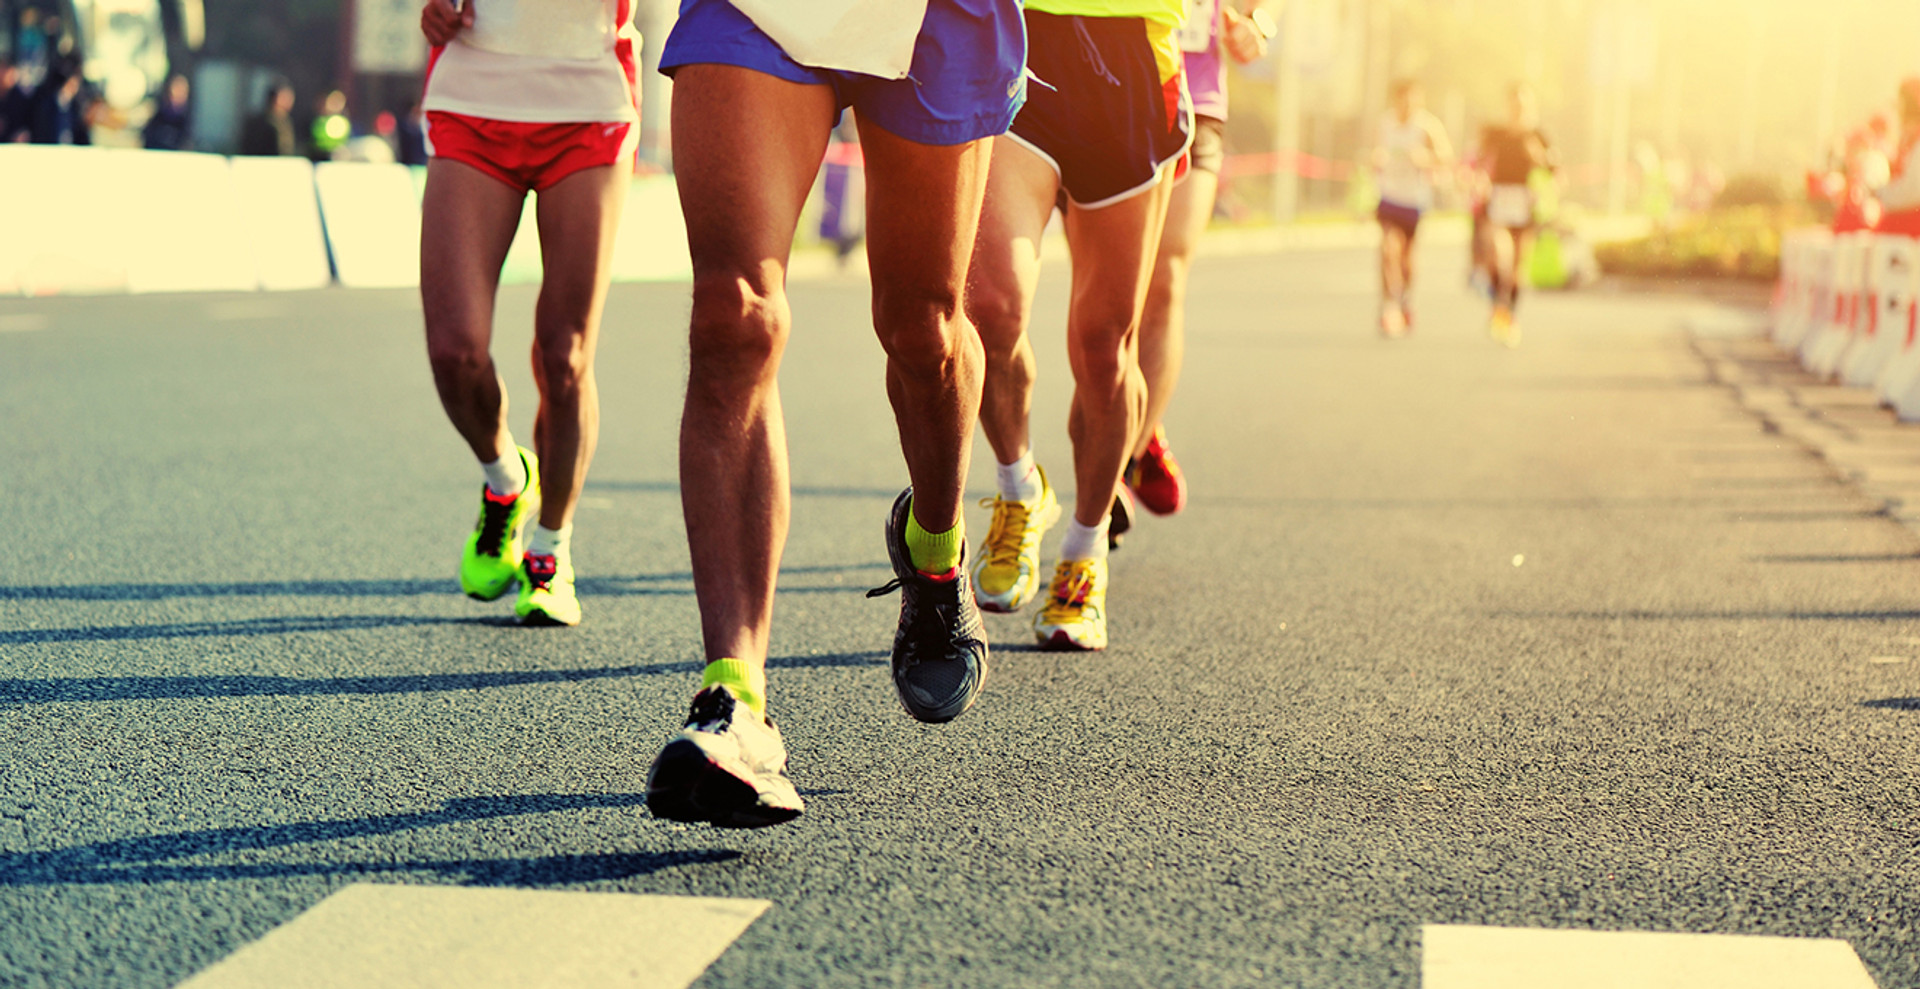 Біг і його користь: чи бігати марафони та як підтримати мотивацію